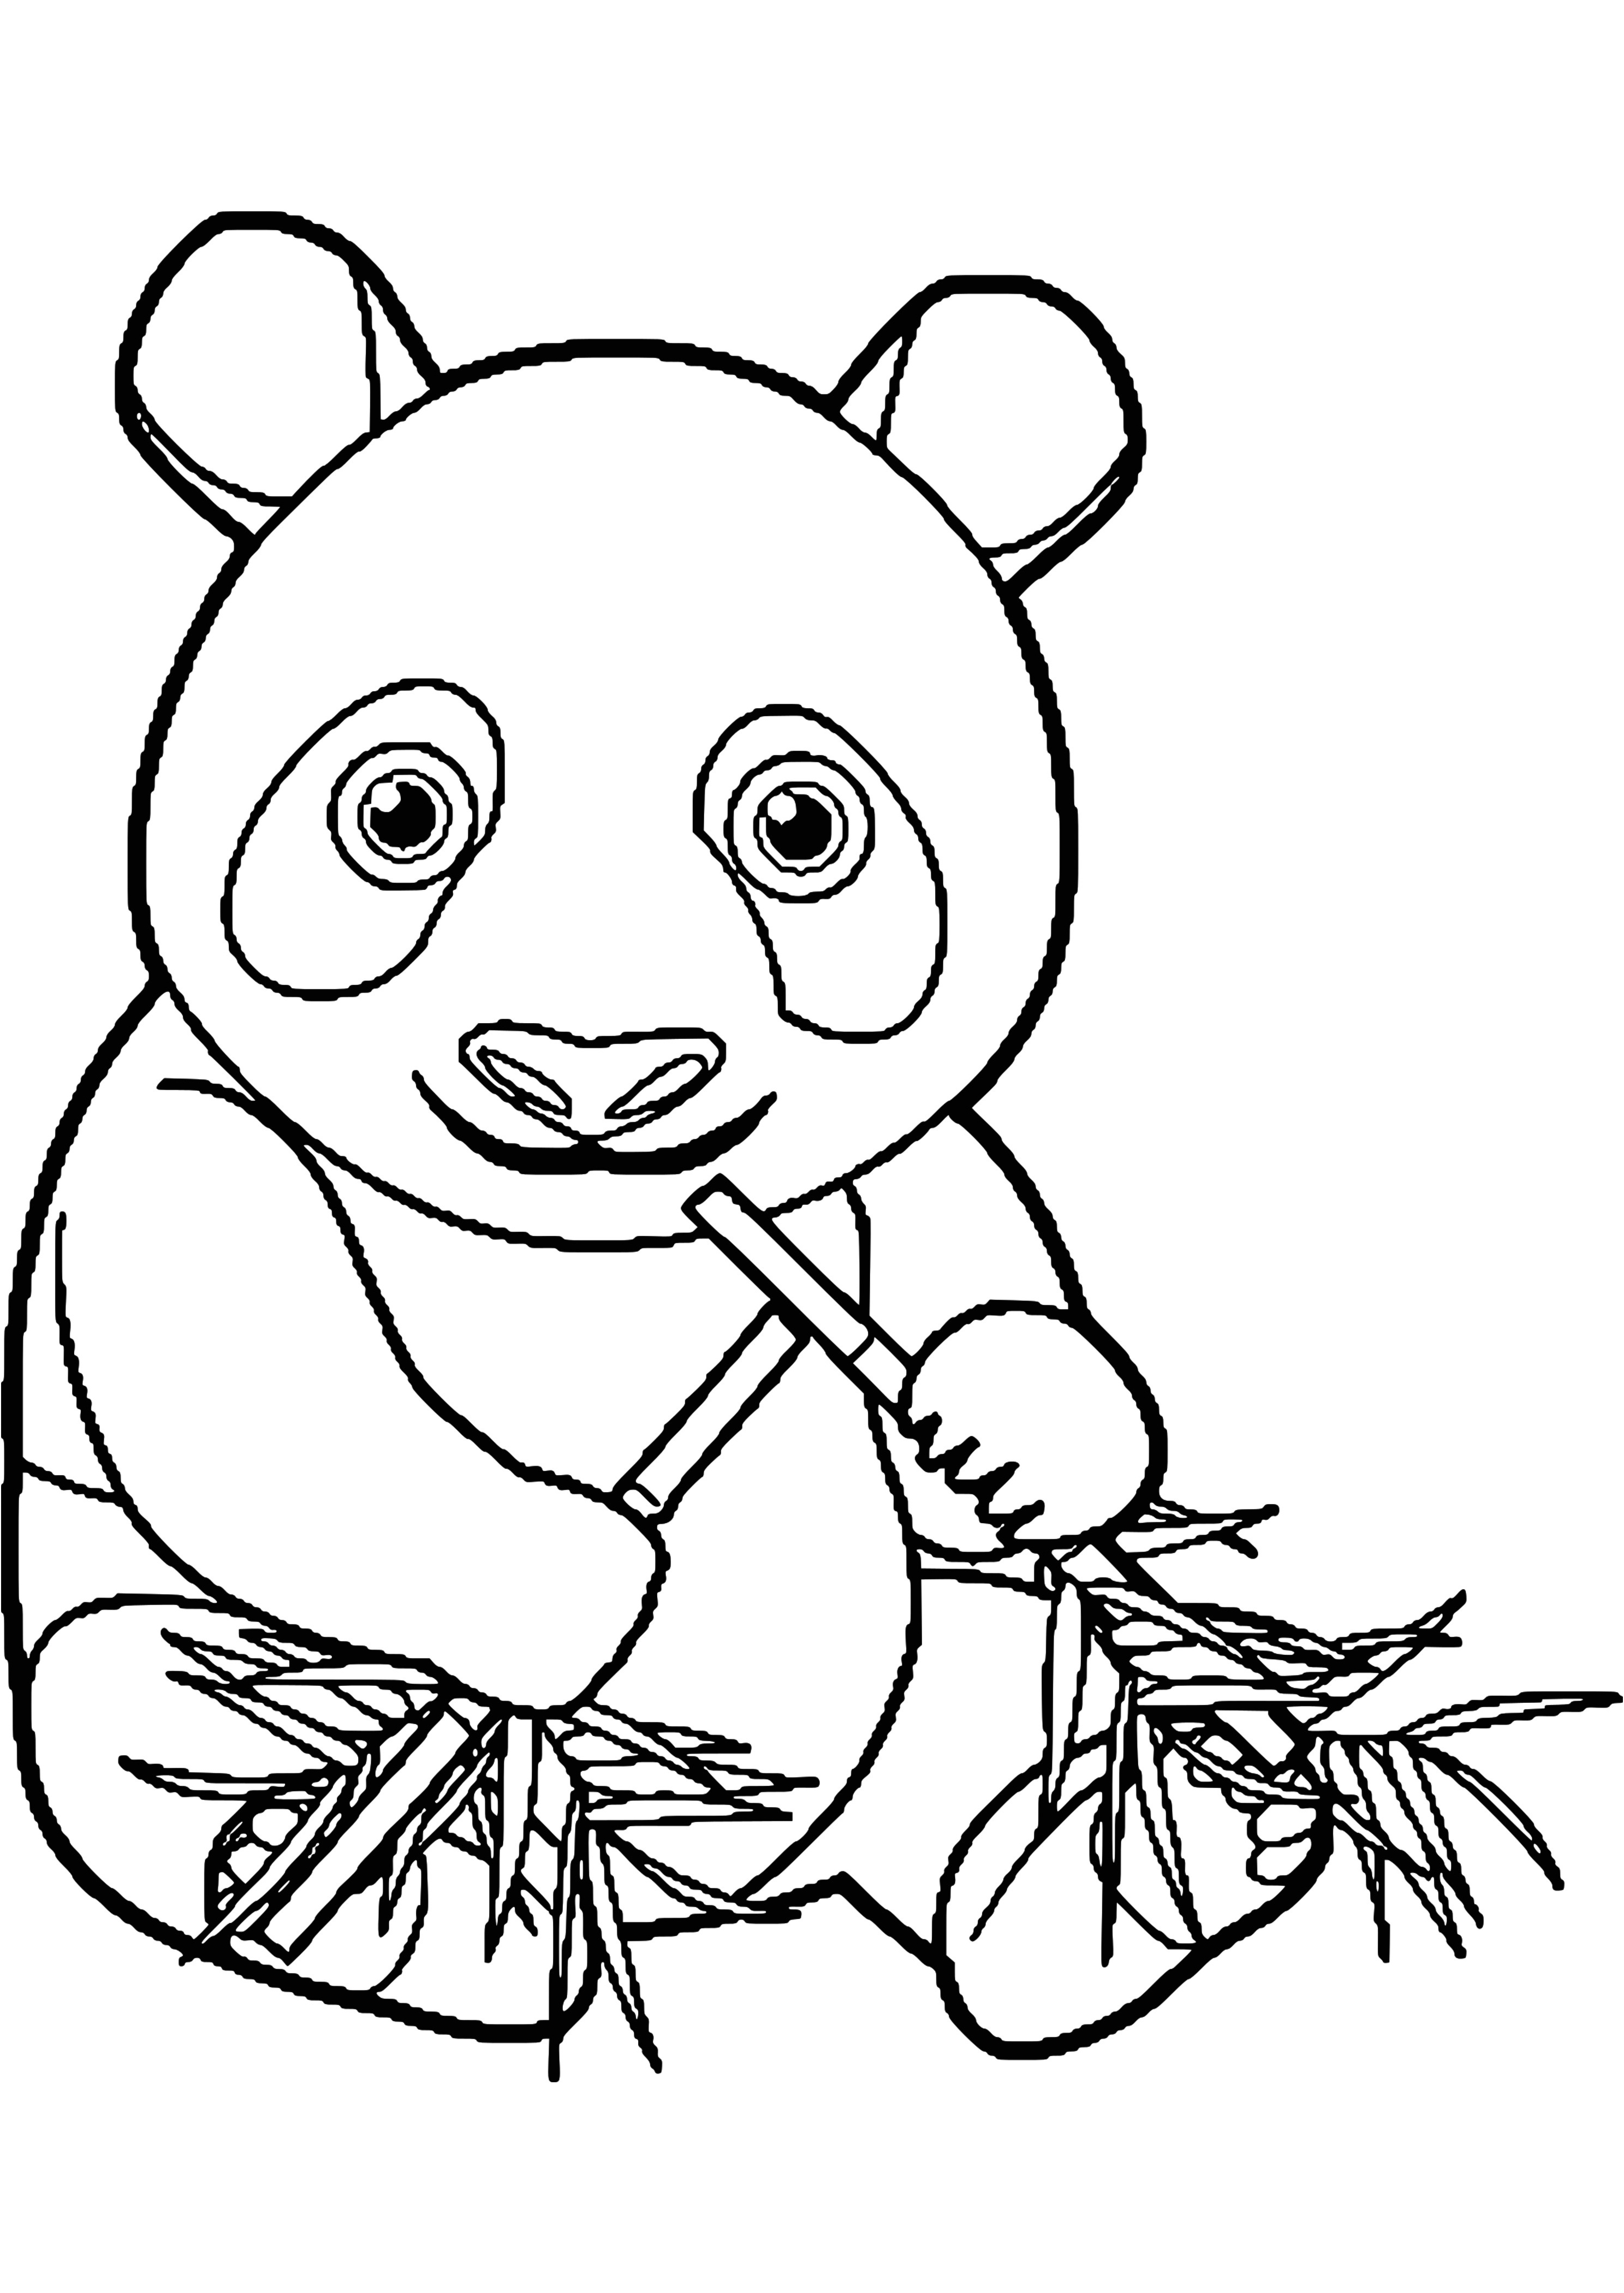 coloriage panda a imprimer gratuit s dessin colorier pandal meublerc 2